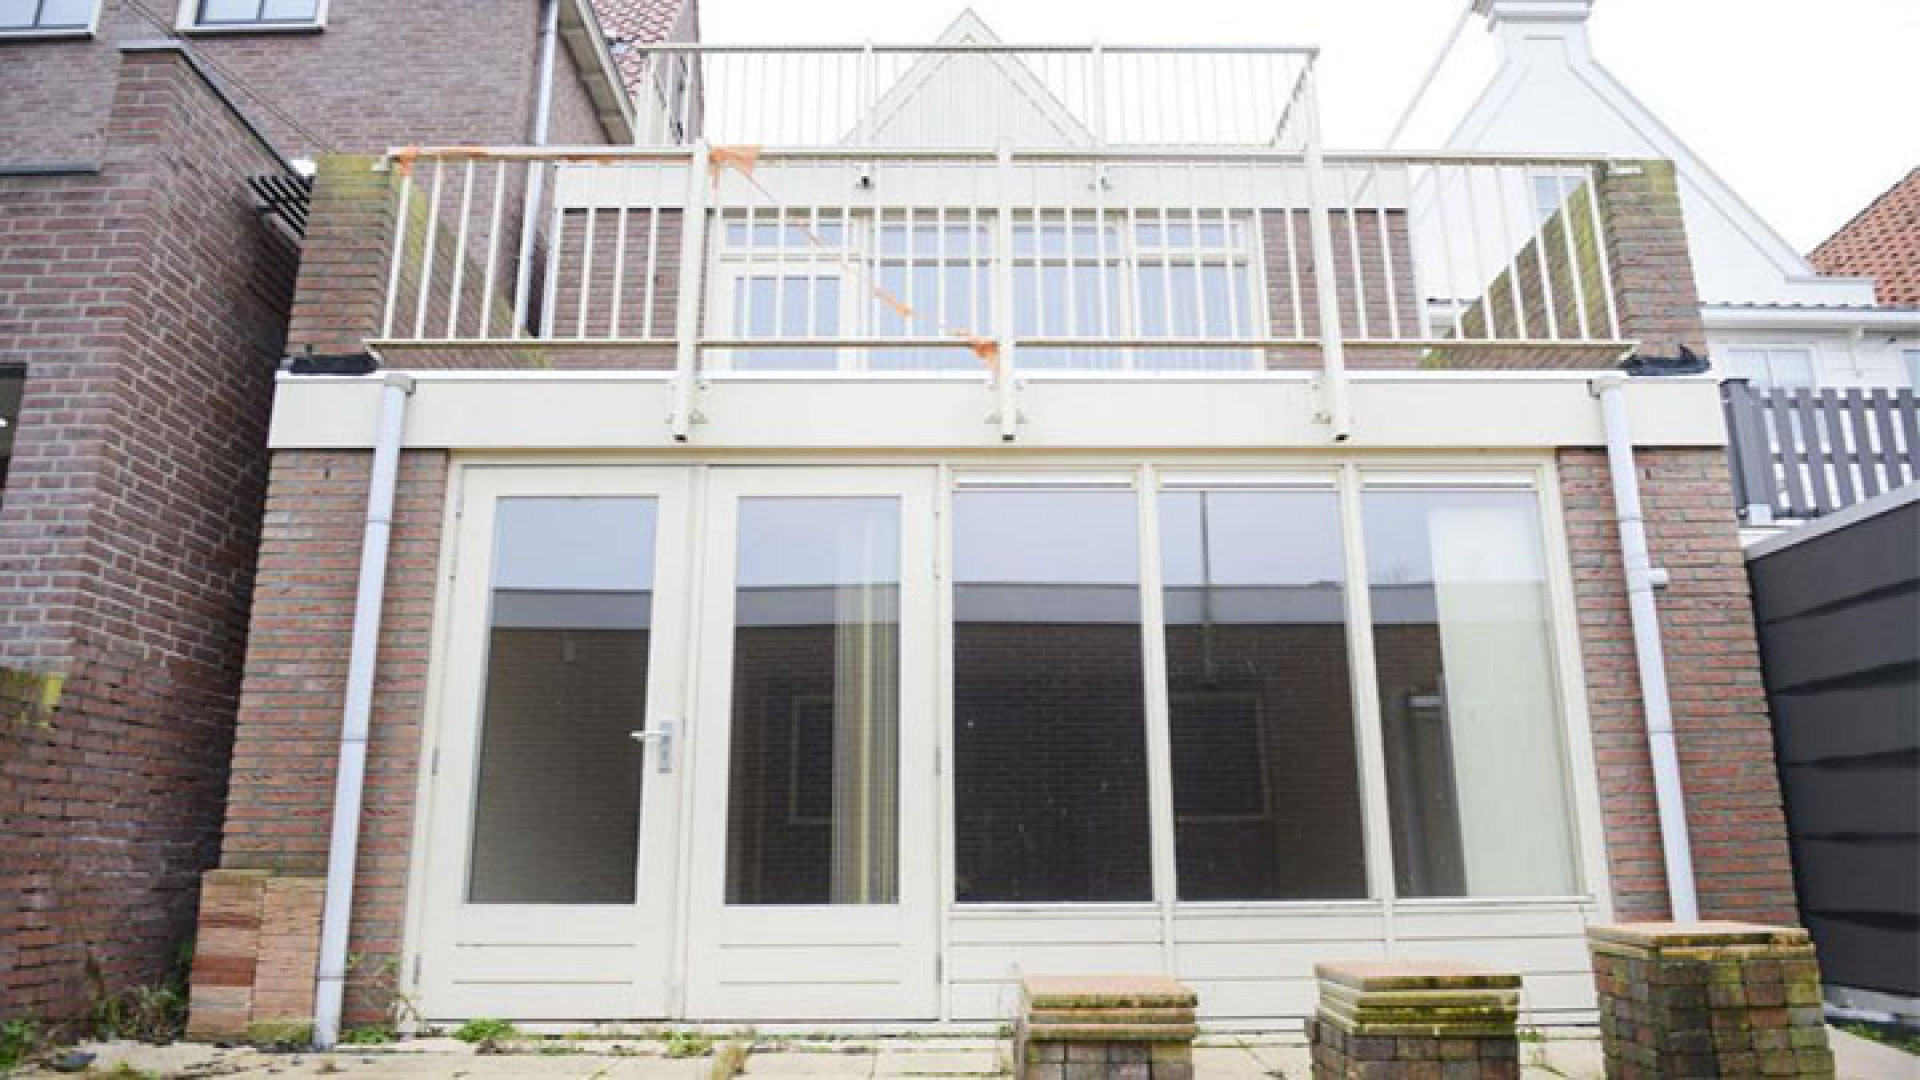 Funderingsprobleem nekt verkoop Volendamse huis van Yolanthe. Zie foto's 20